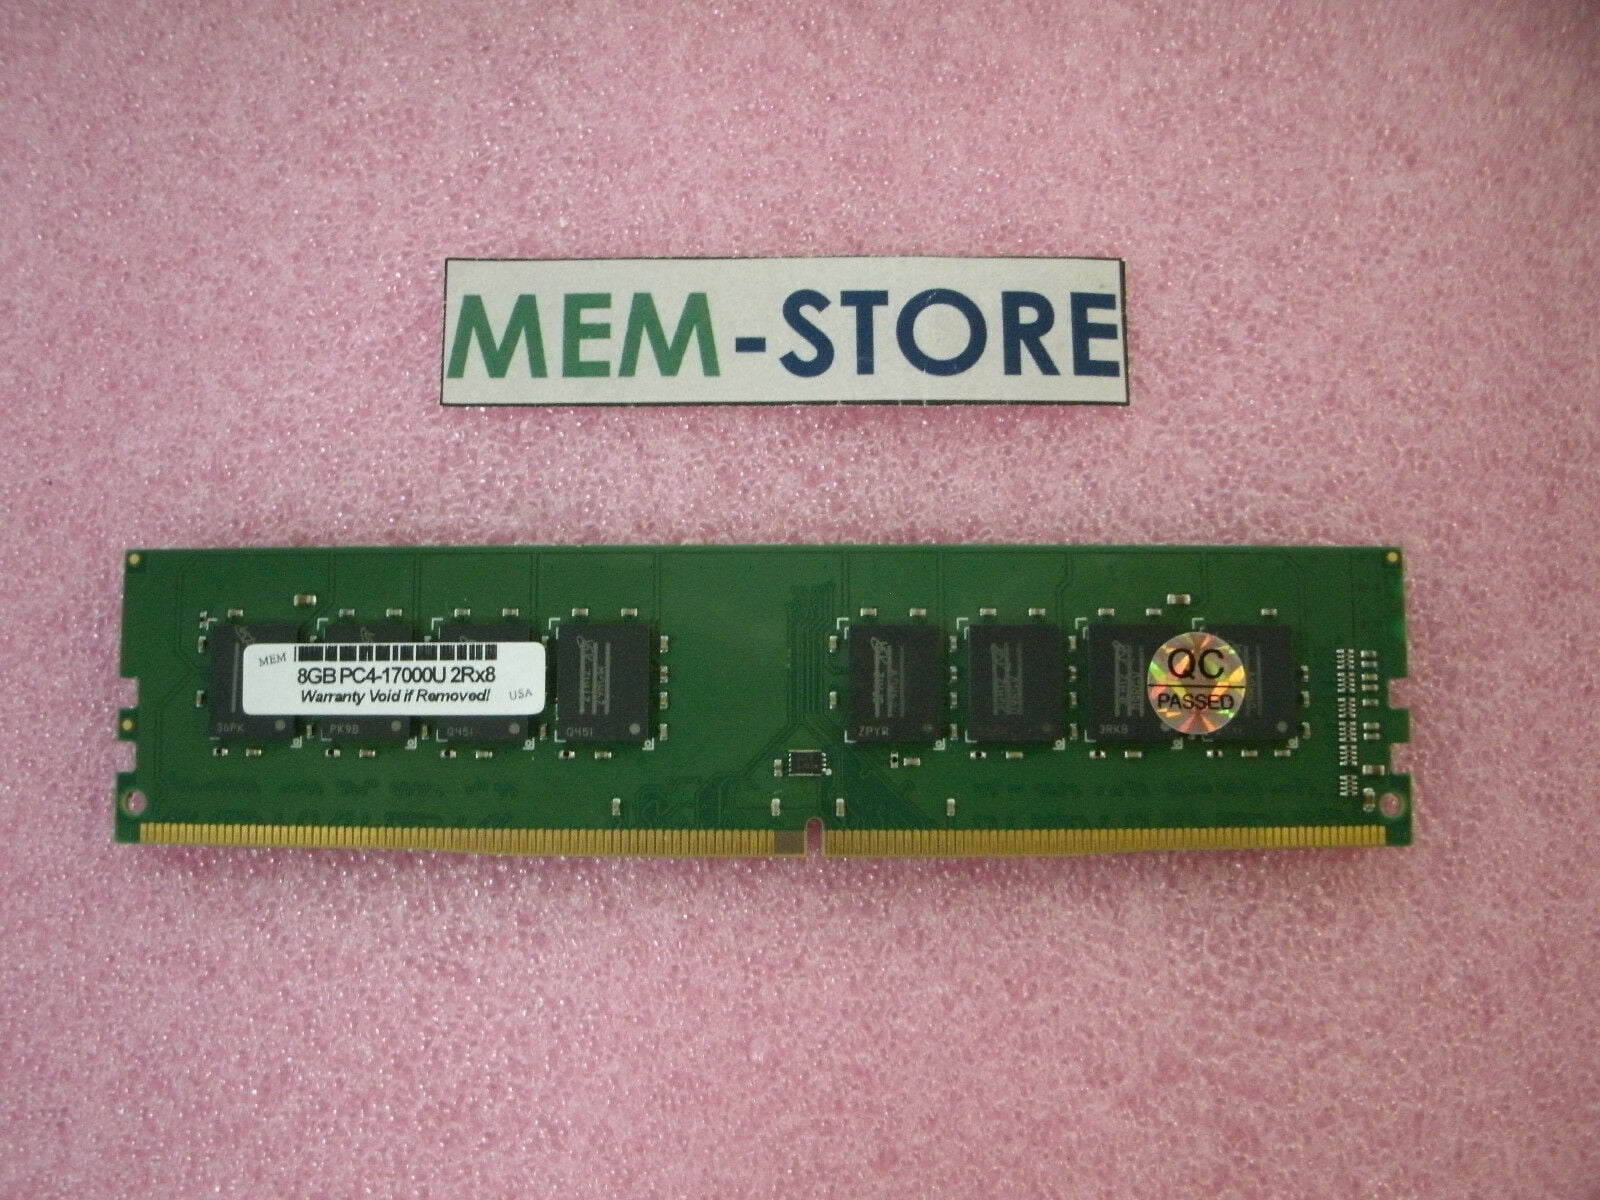 3 x 2GB DDR2 DIMM AM2 667Mhz PC2 5400 / PC2 5300 for Biostar A740G M2+ 6 GB MemoryMasters 6GB 240 PIN